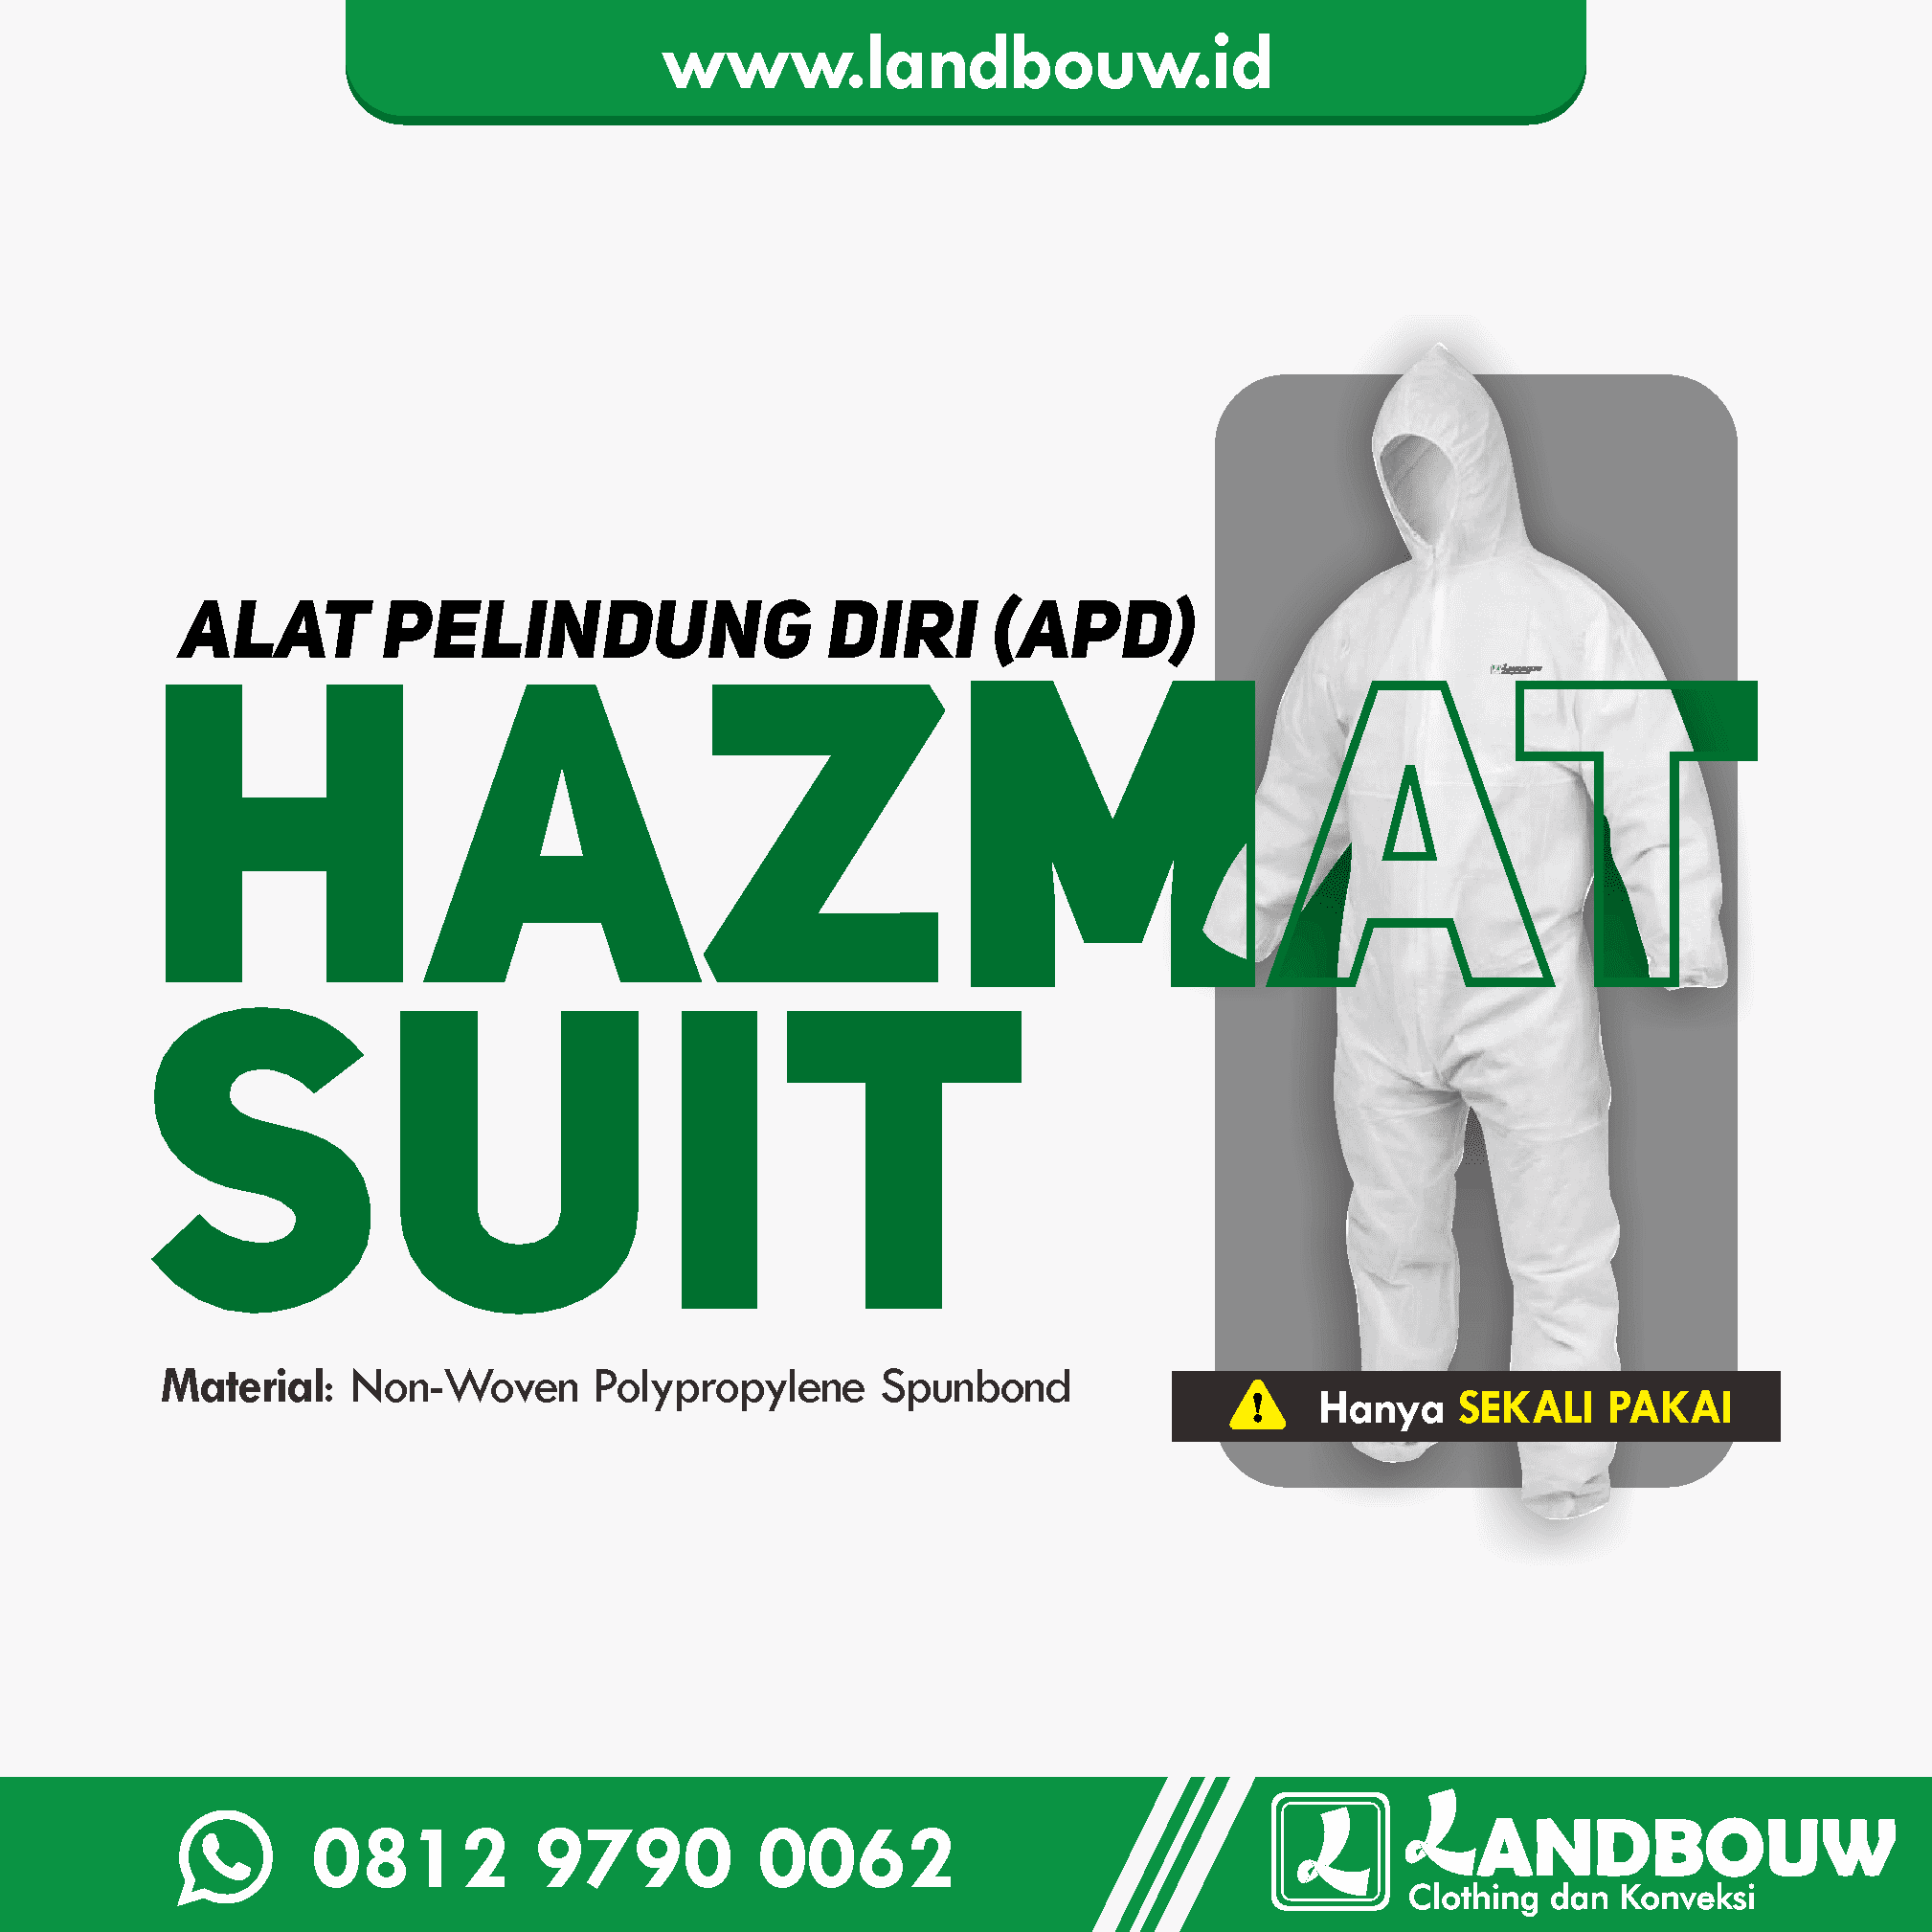 Landbouw Konveksi Vendor Hazmat Suit – Pakaian APD di Bungku